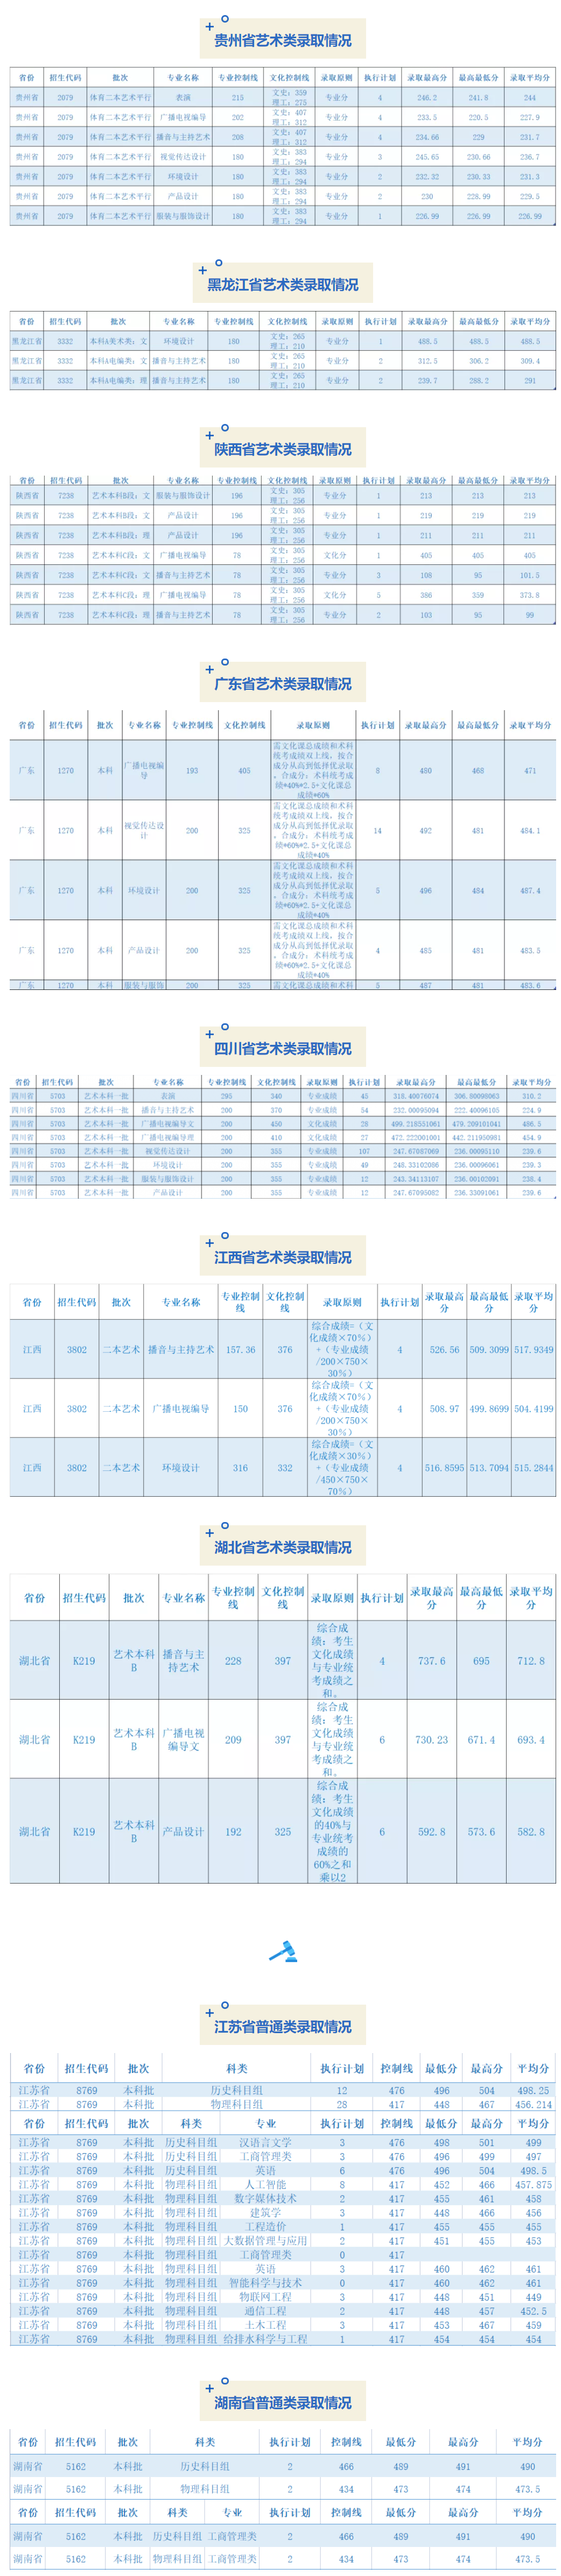 成都锦城学院2021年录取分数线（更新至7月26日）